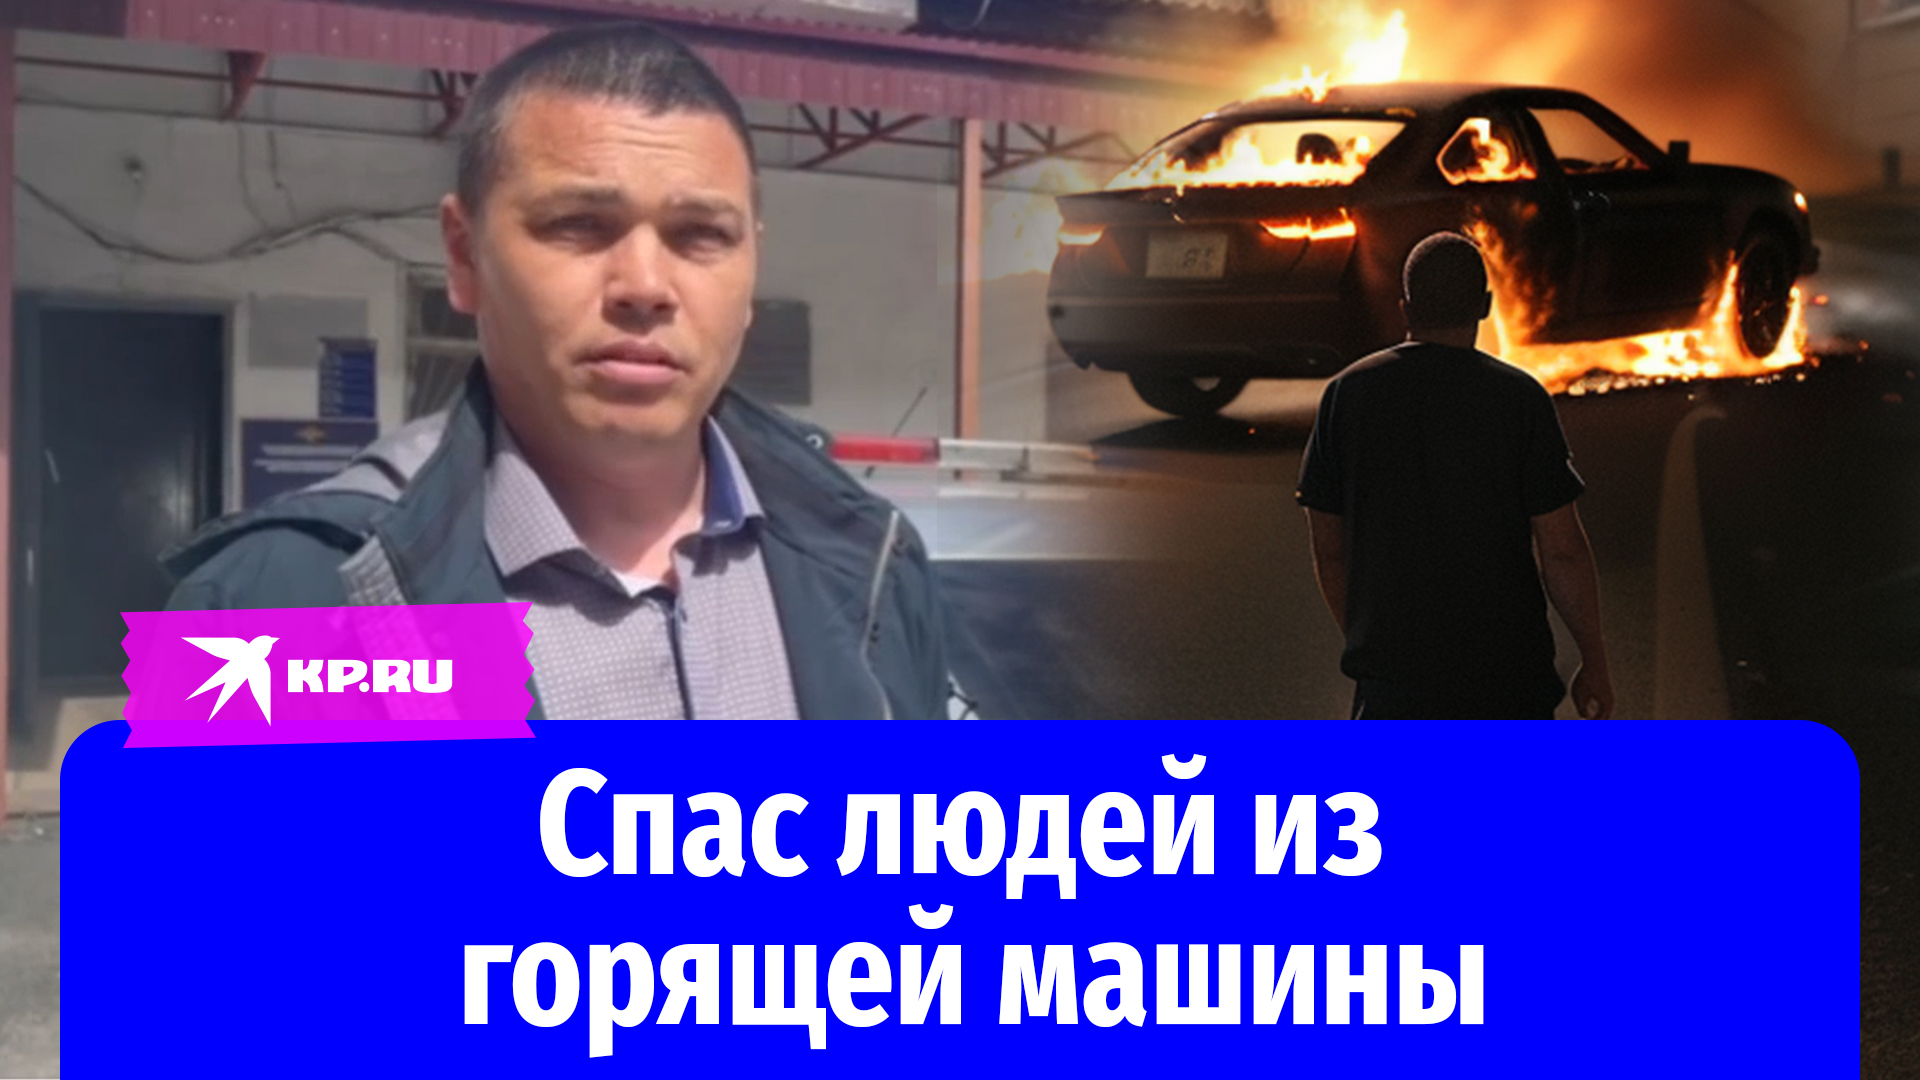 Бывший сотрудник иркутской полиции спас людей из загоревшегося автомобиля